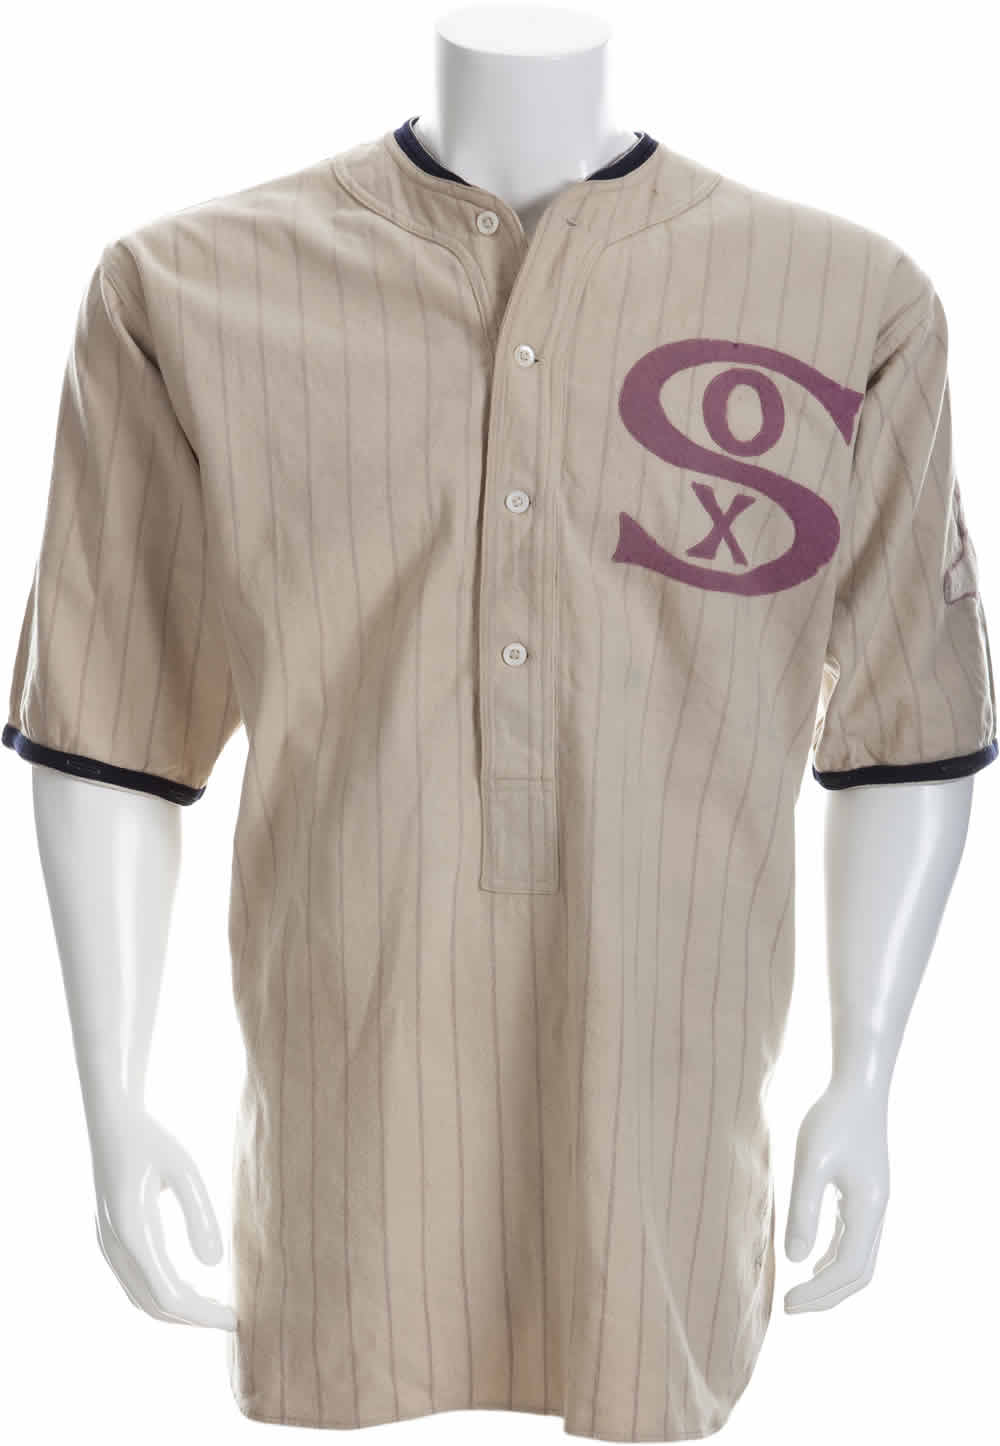 Fabers White Sox Uniform